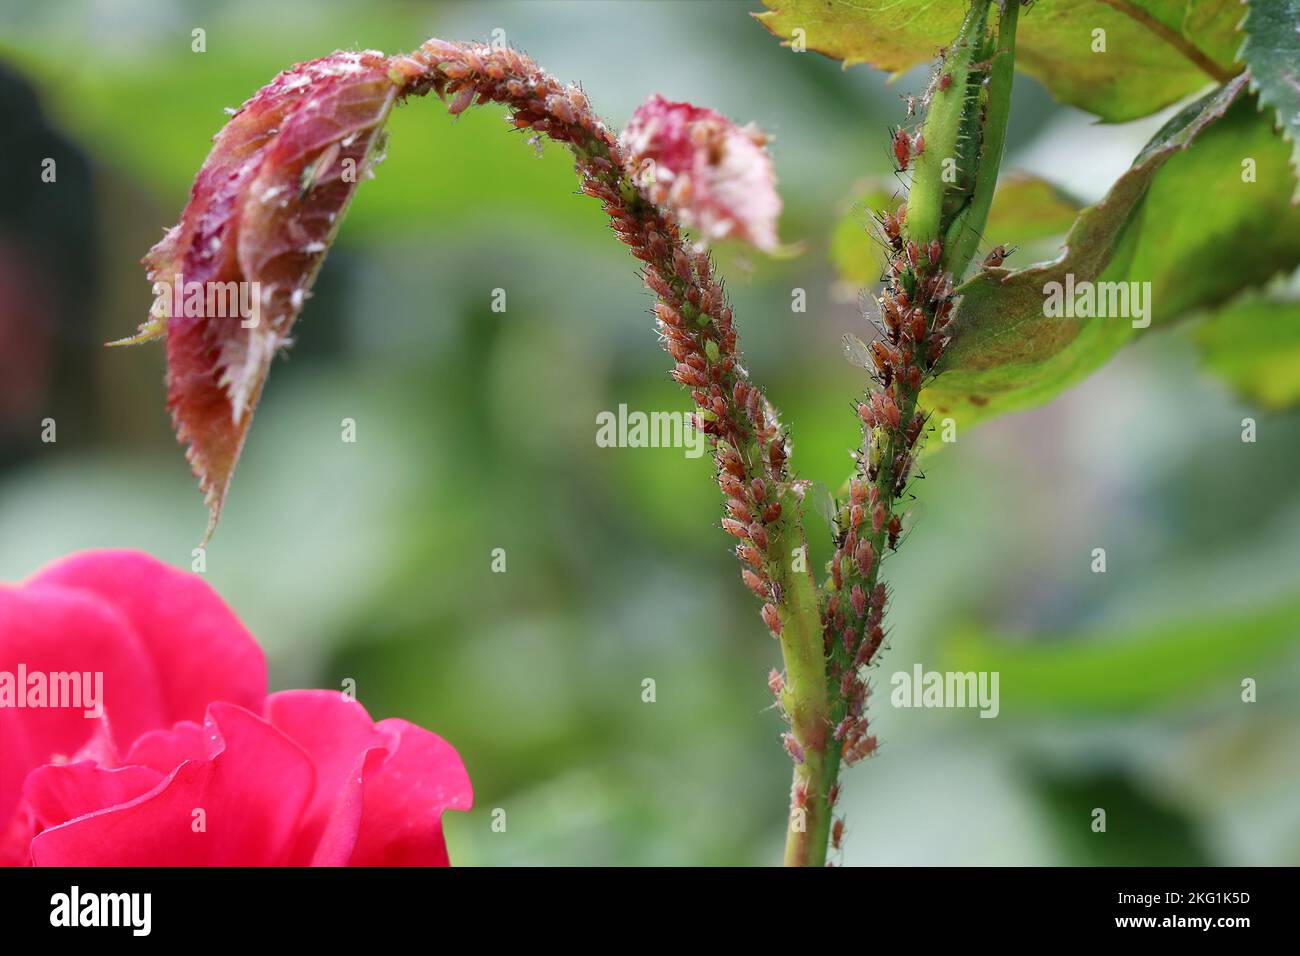 Viele Blattläuse sitzen auf dem Stiel der Rose und saugen die Säfte aus. Krankheiten und Probleme von Rosen. Macrosiphum rosae, die Rosenaphid. Stockfoto